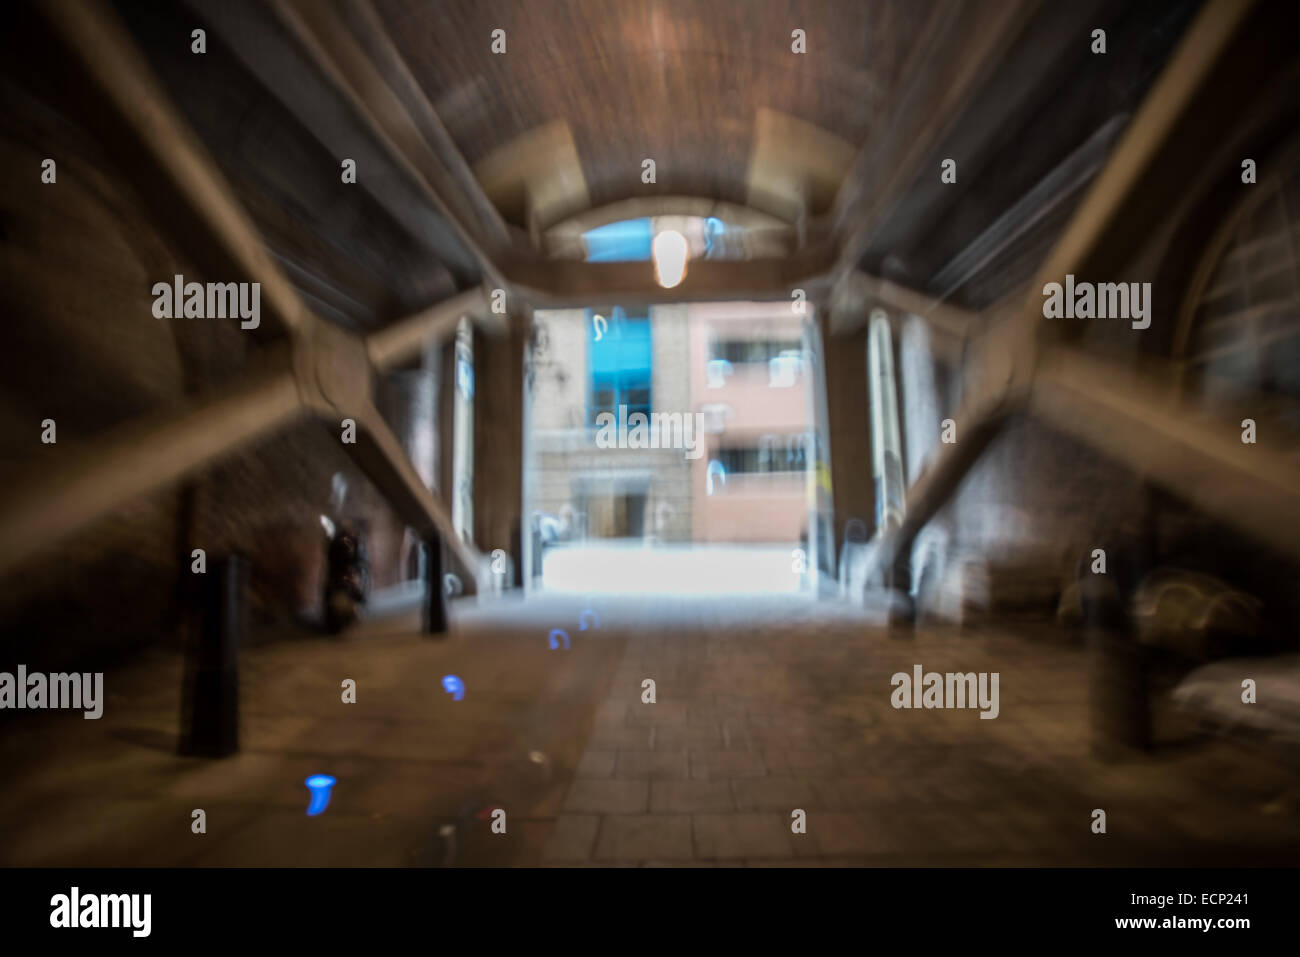 Blurred view of an underground pedestrian passegeway Stock Photo